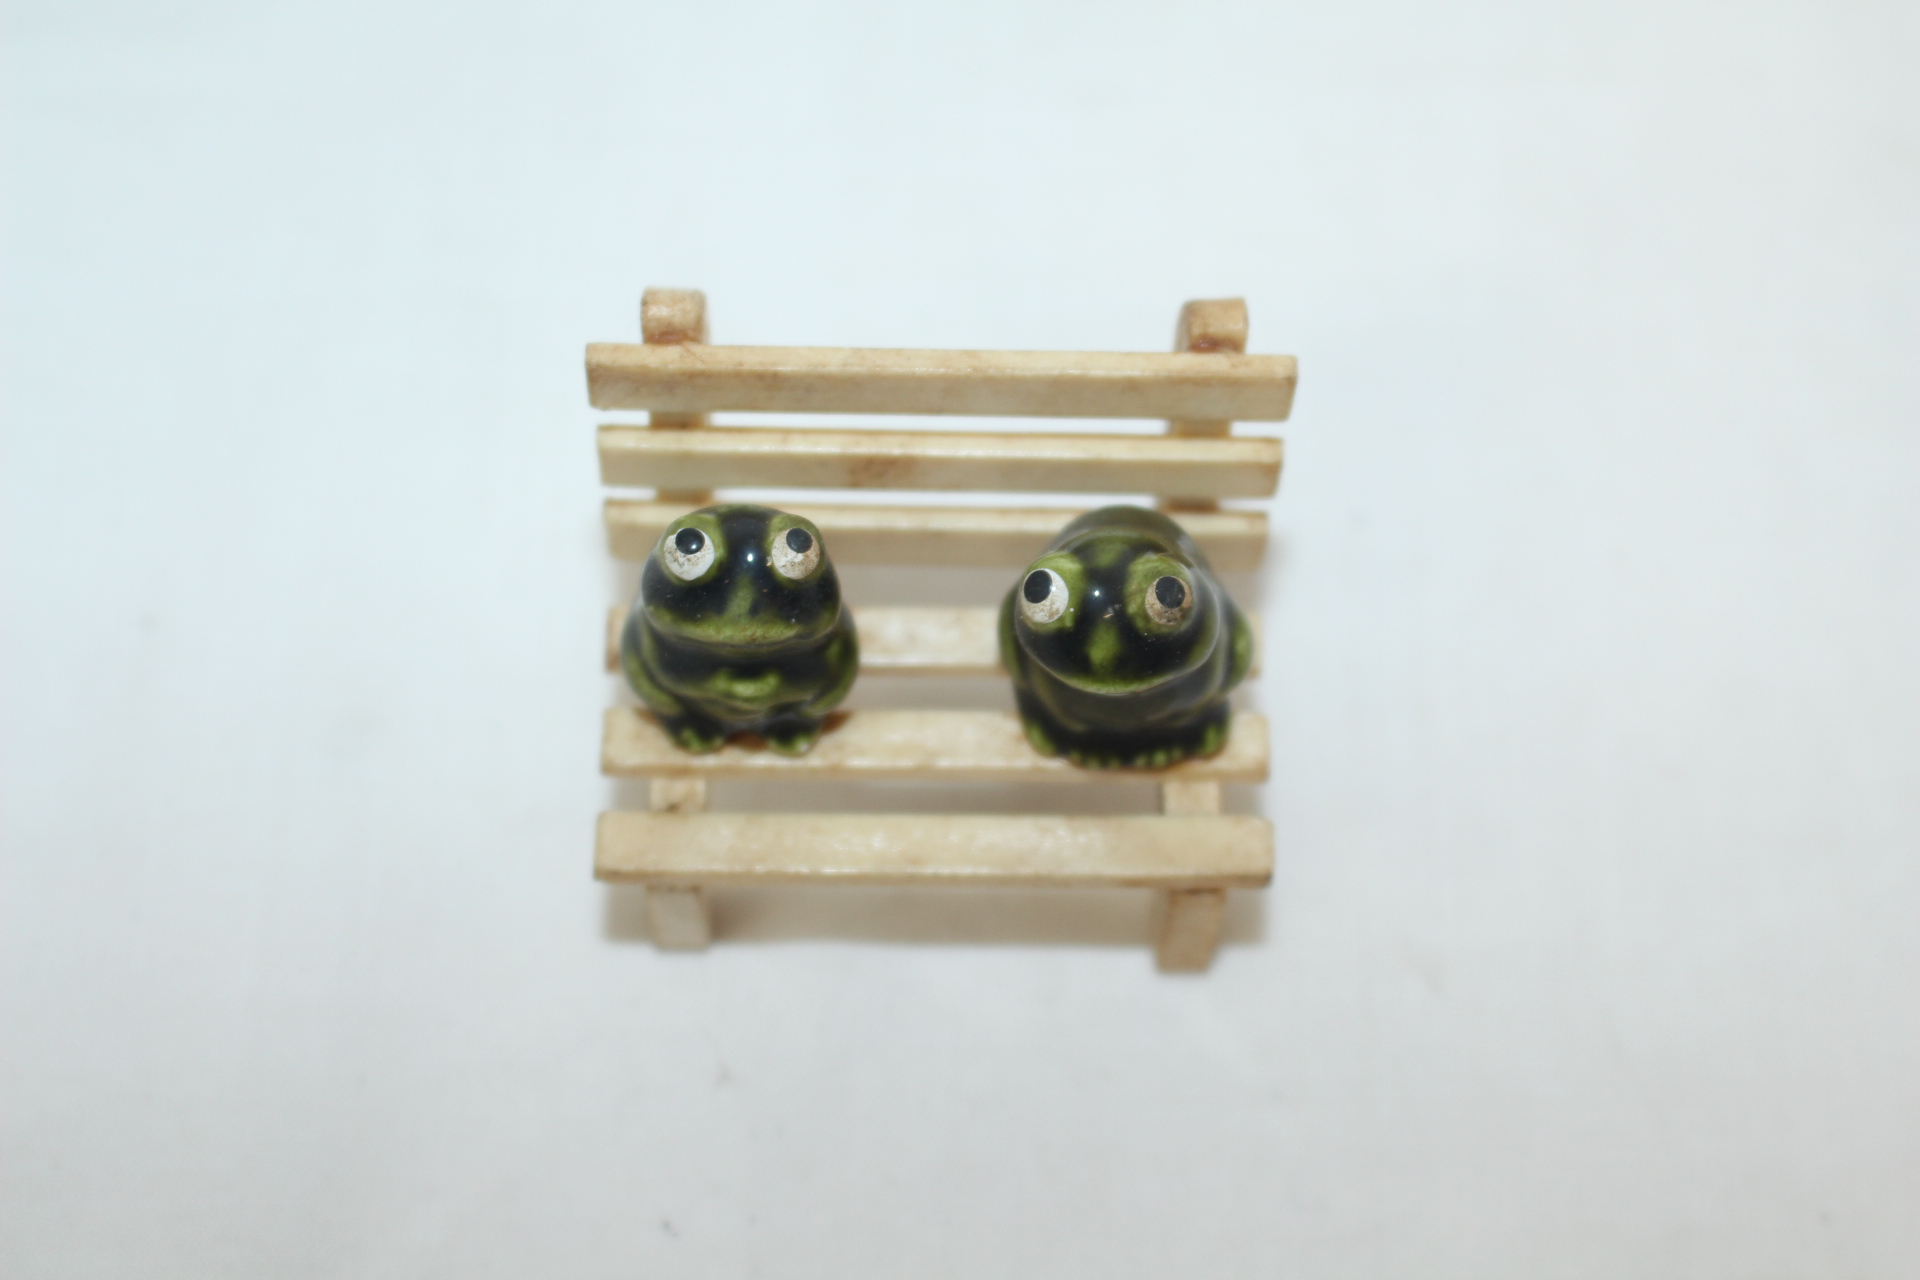 소형크기의 나무의자에 청자 개구리 조각상